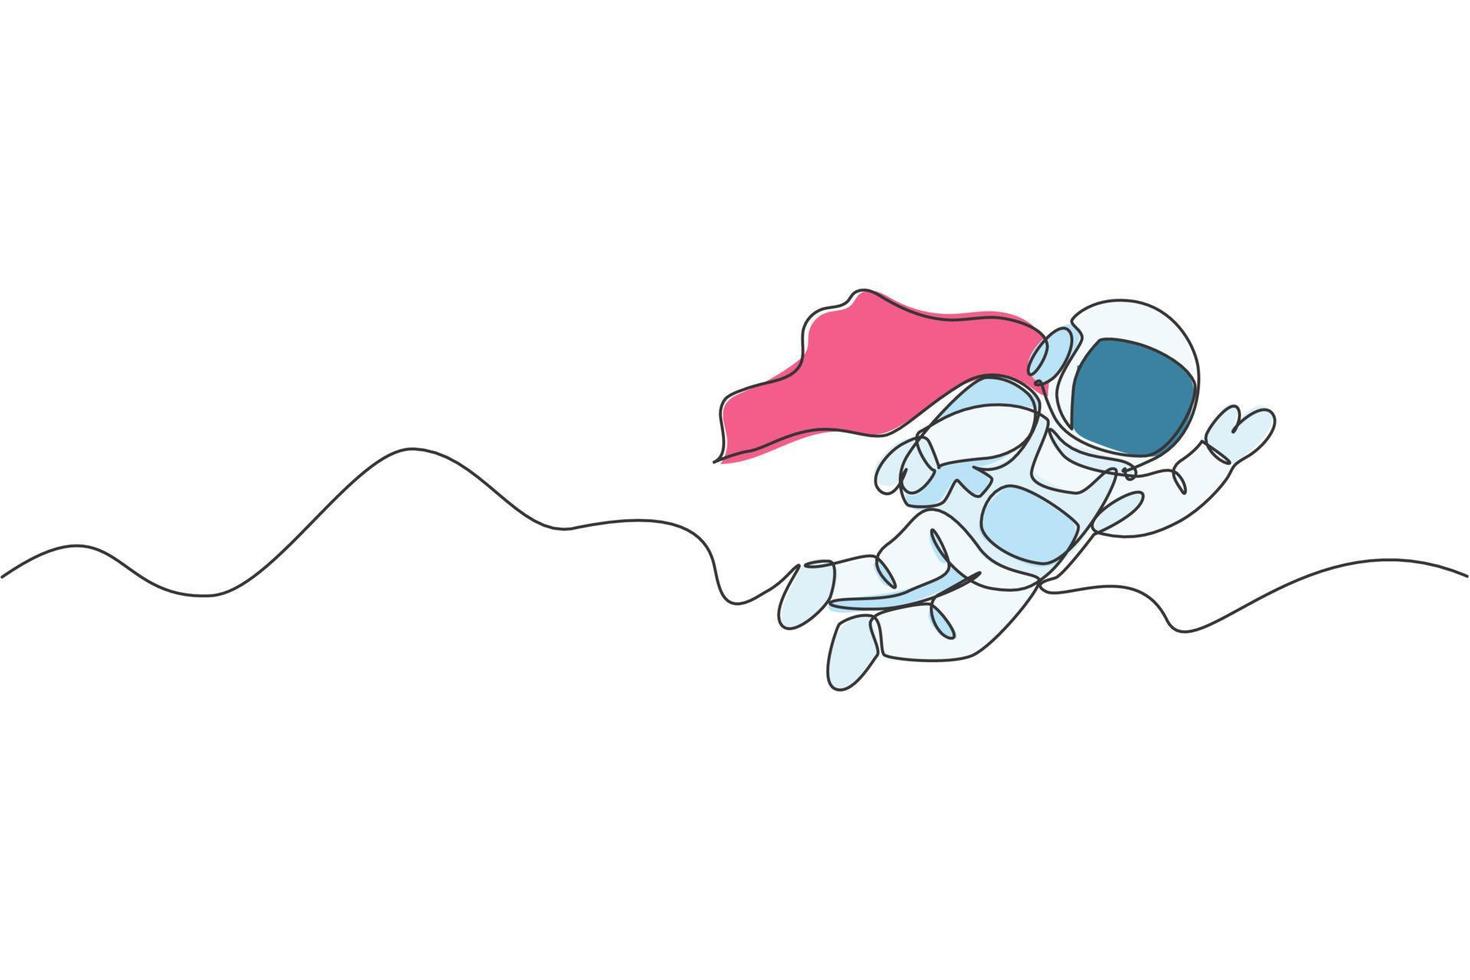 un singolo disegno a tratteggio dell'astronauta dell'uomo dello spazio che esplora la galassia cosmica, volando con l'illustrazione grafica vettoriale della tuta alare. concetto di fantasia di vita nello spazio cosmico di fantasia. design moderno a linea continua